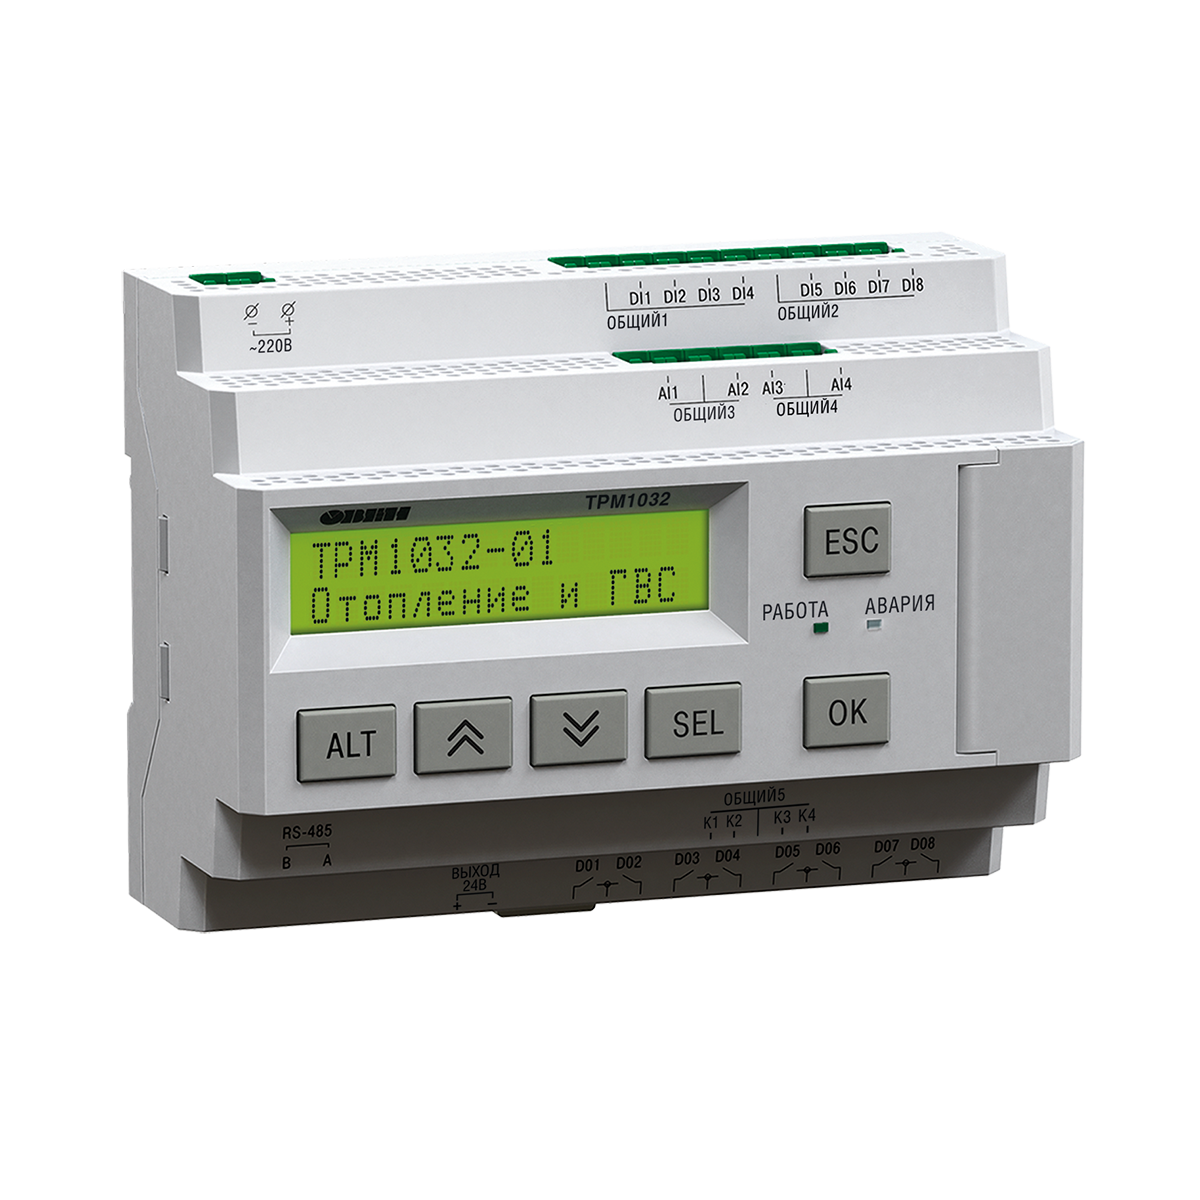 ТРМ1032М-01.20.У – устройство с готовой логикой для автоматизации контуров отопления и ГВС в ИТП/ЦТП.